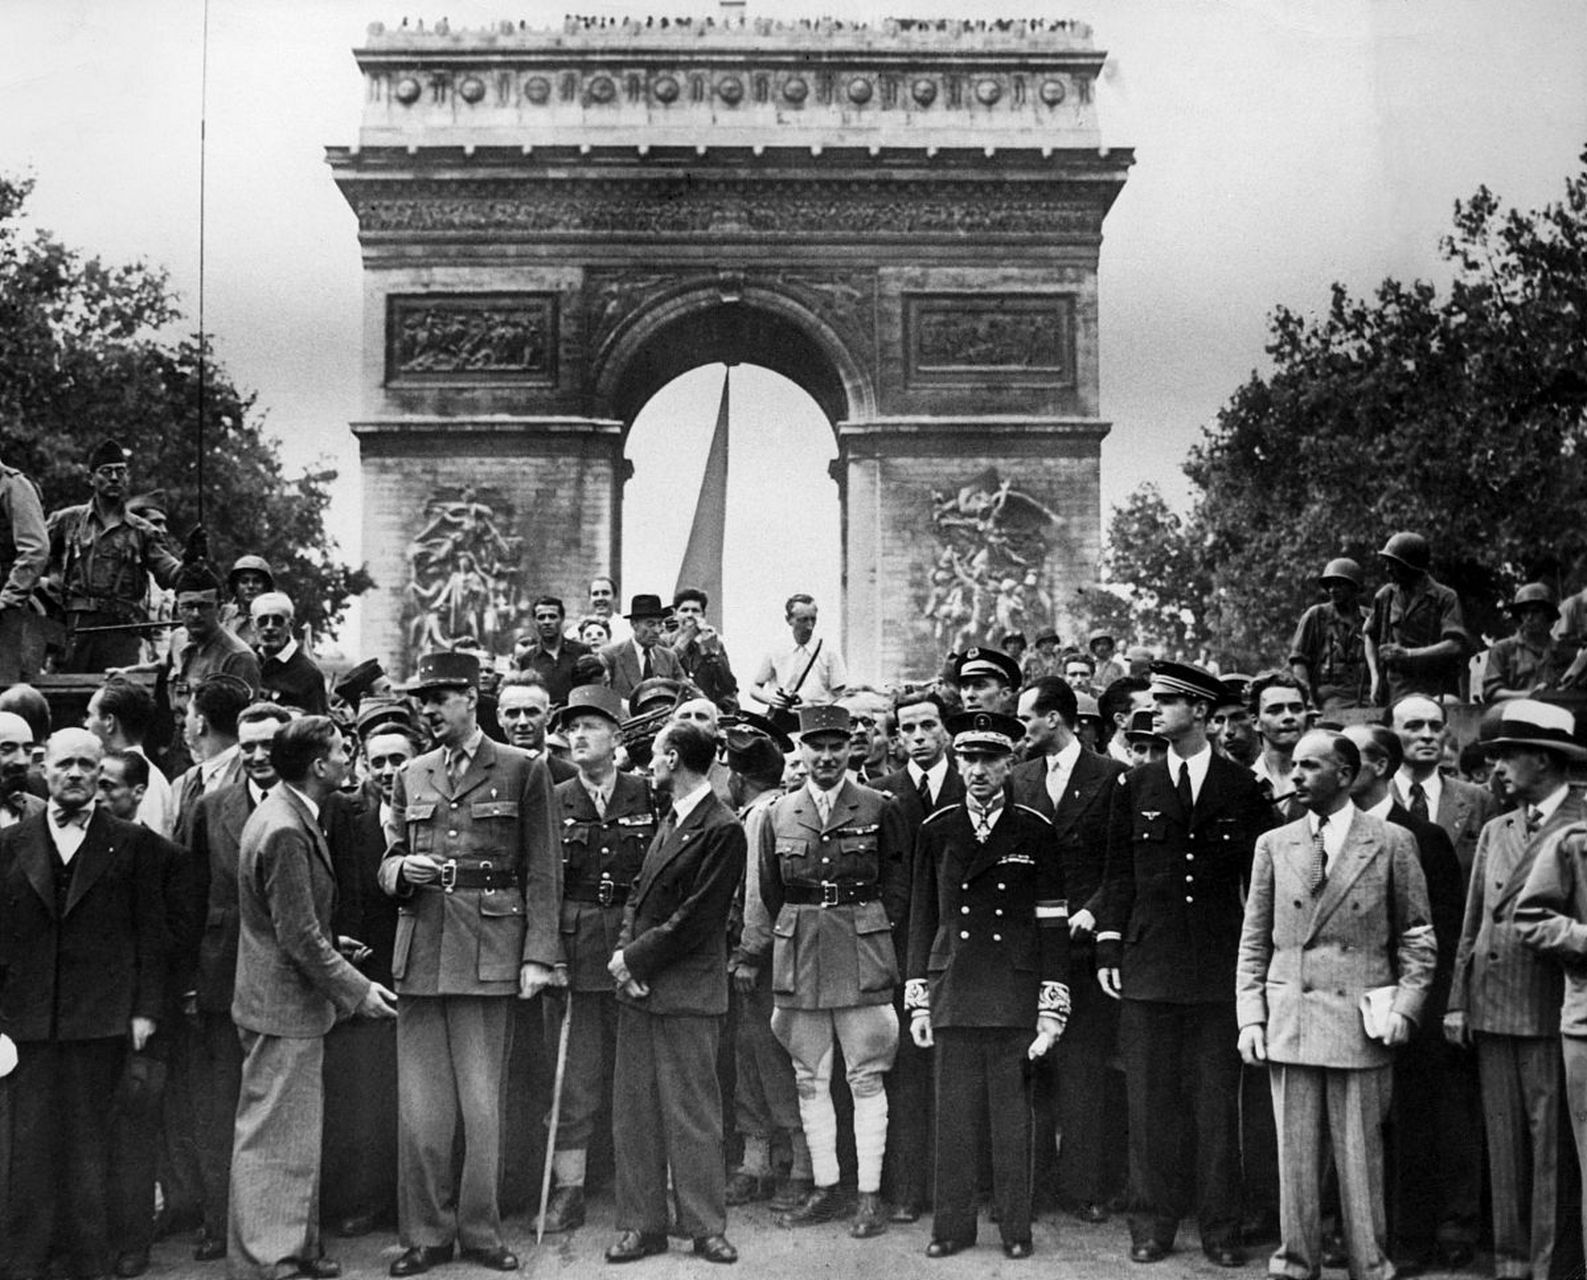 法国向德国投降 1940年6月22日,德法在法国贡比涅森林中的雷通签署了